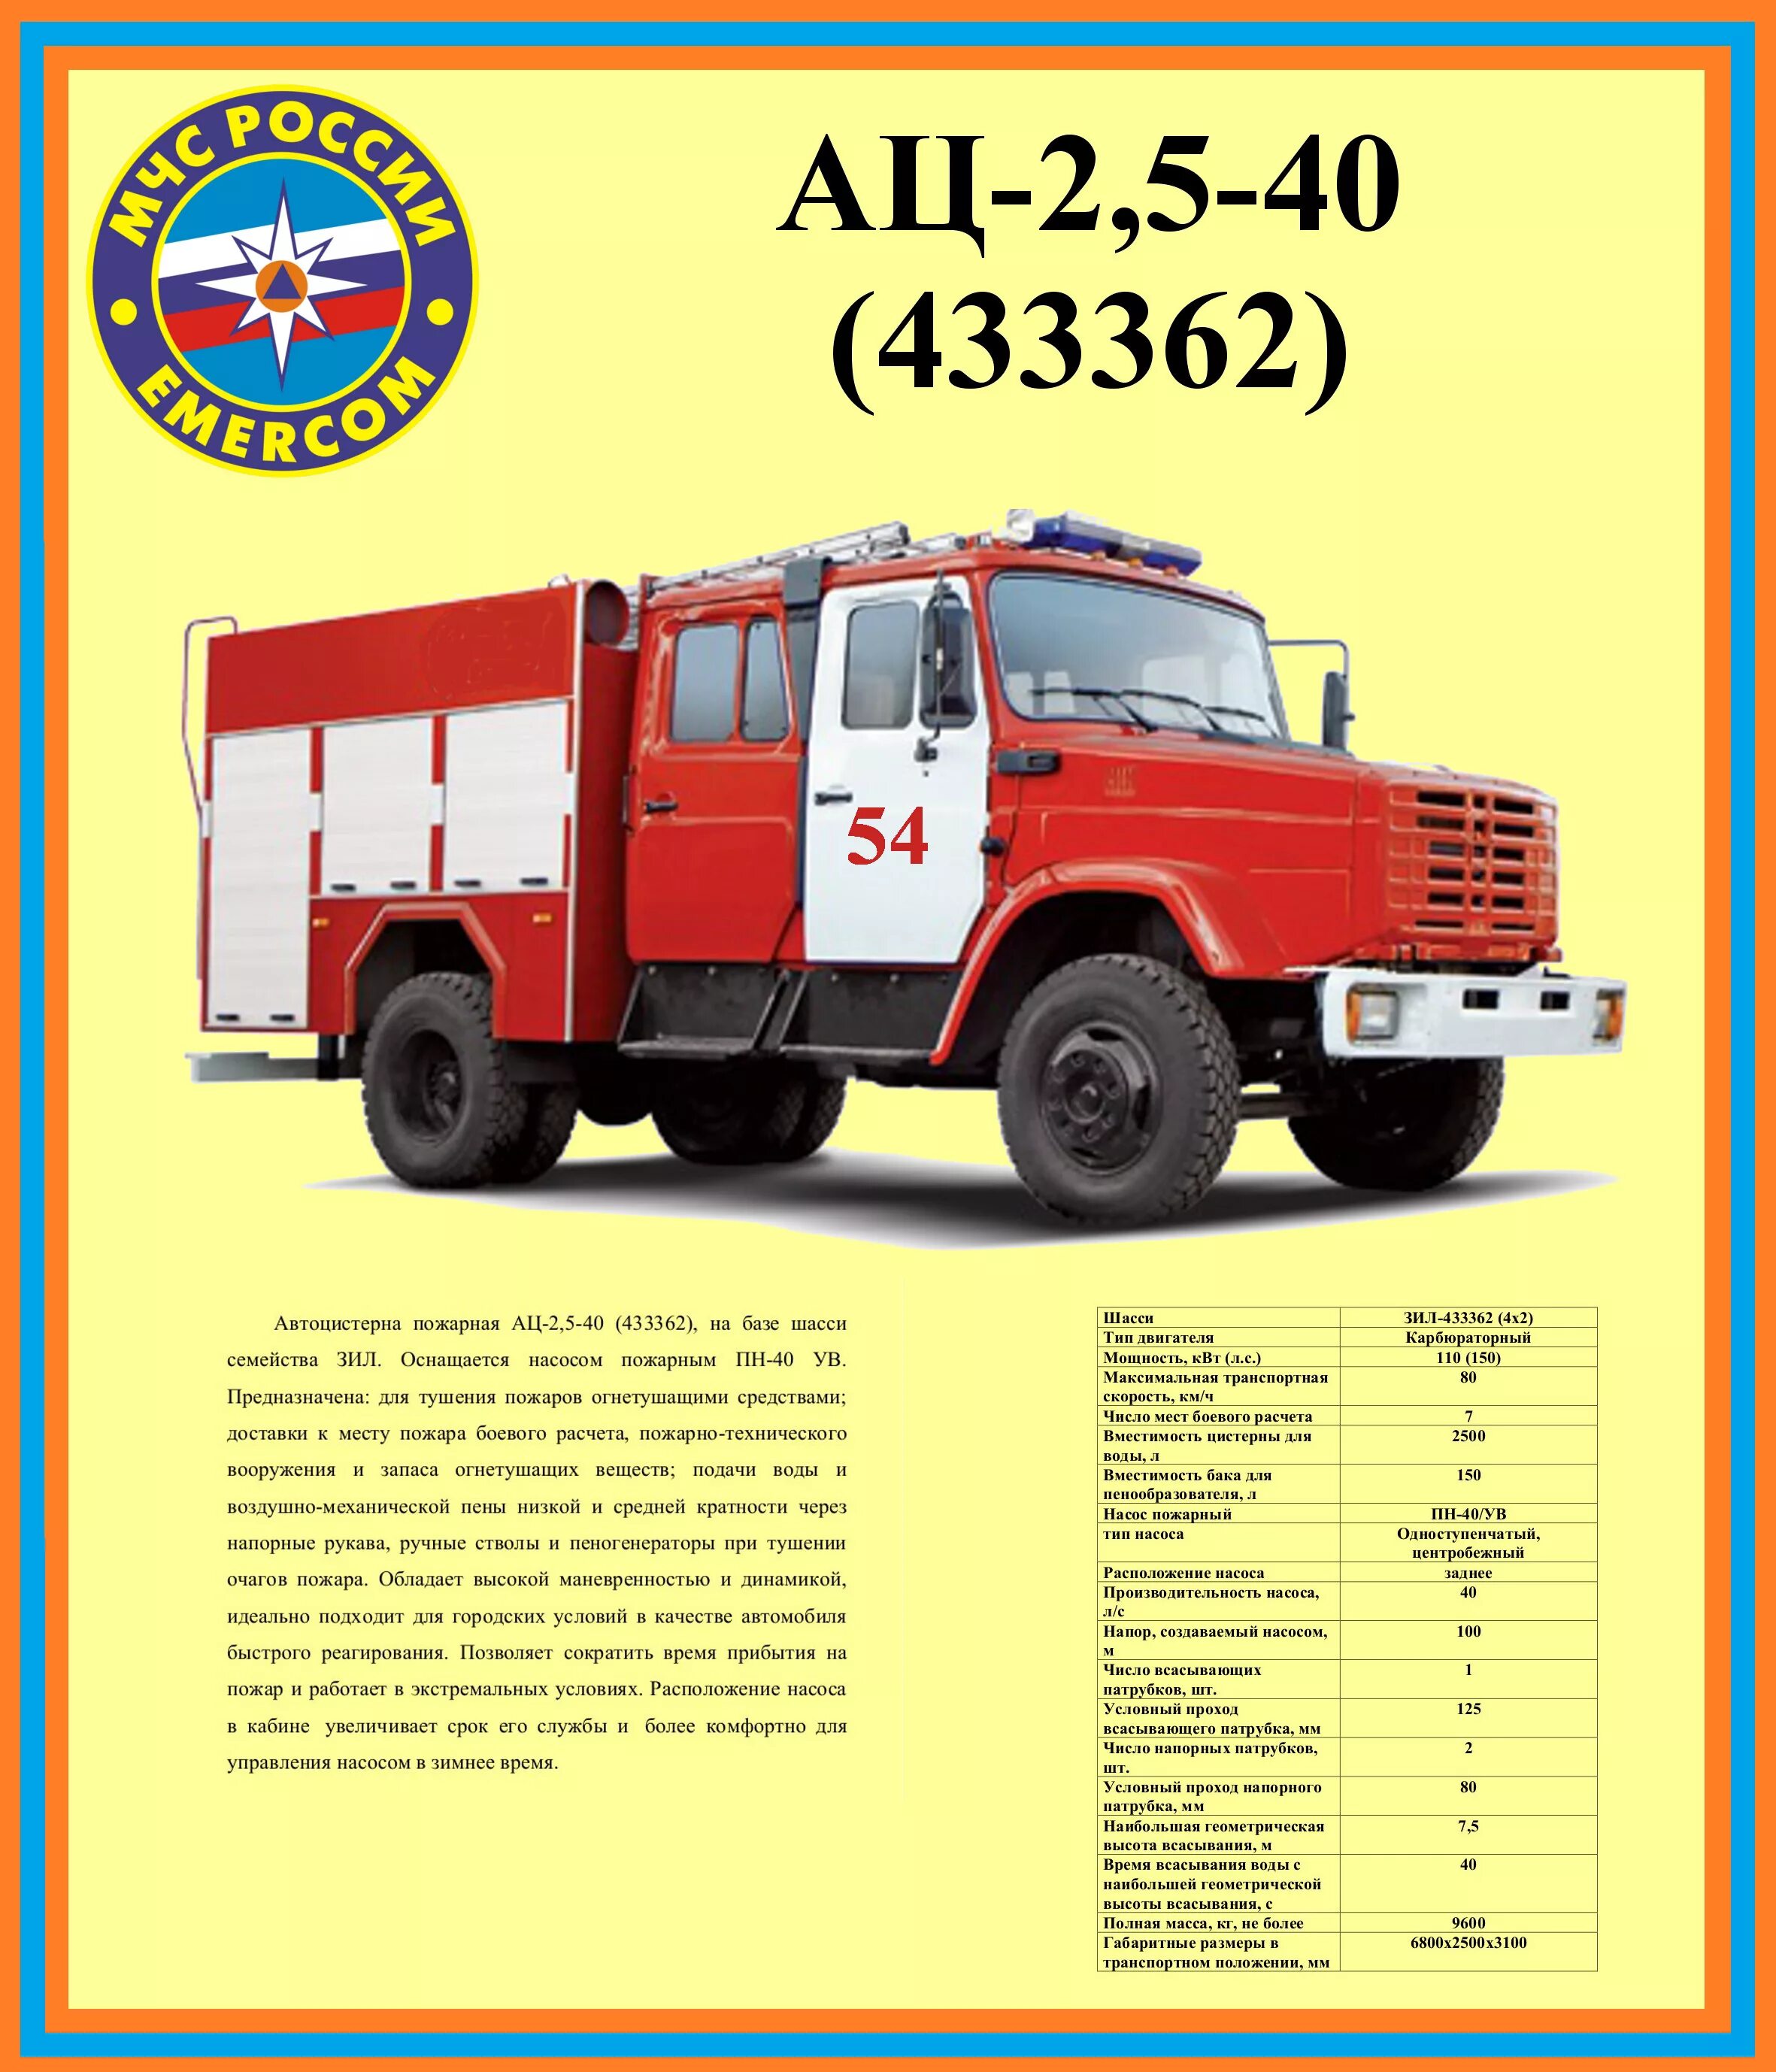 ТТХ ЗИЛ 131 пожарный автомобиль АЦ. ТТХ пожарного автомобиля ЗИЛ-130 ЗИЛ-131. Пожарная машина ЗИЛ 131 технические характеристики. ЗИЛ-131 пожарный автомобиль ТТХ ЗИЛ.